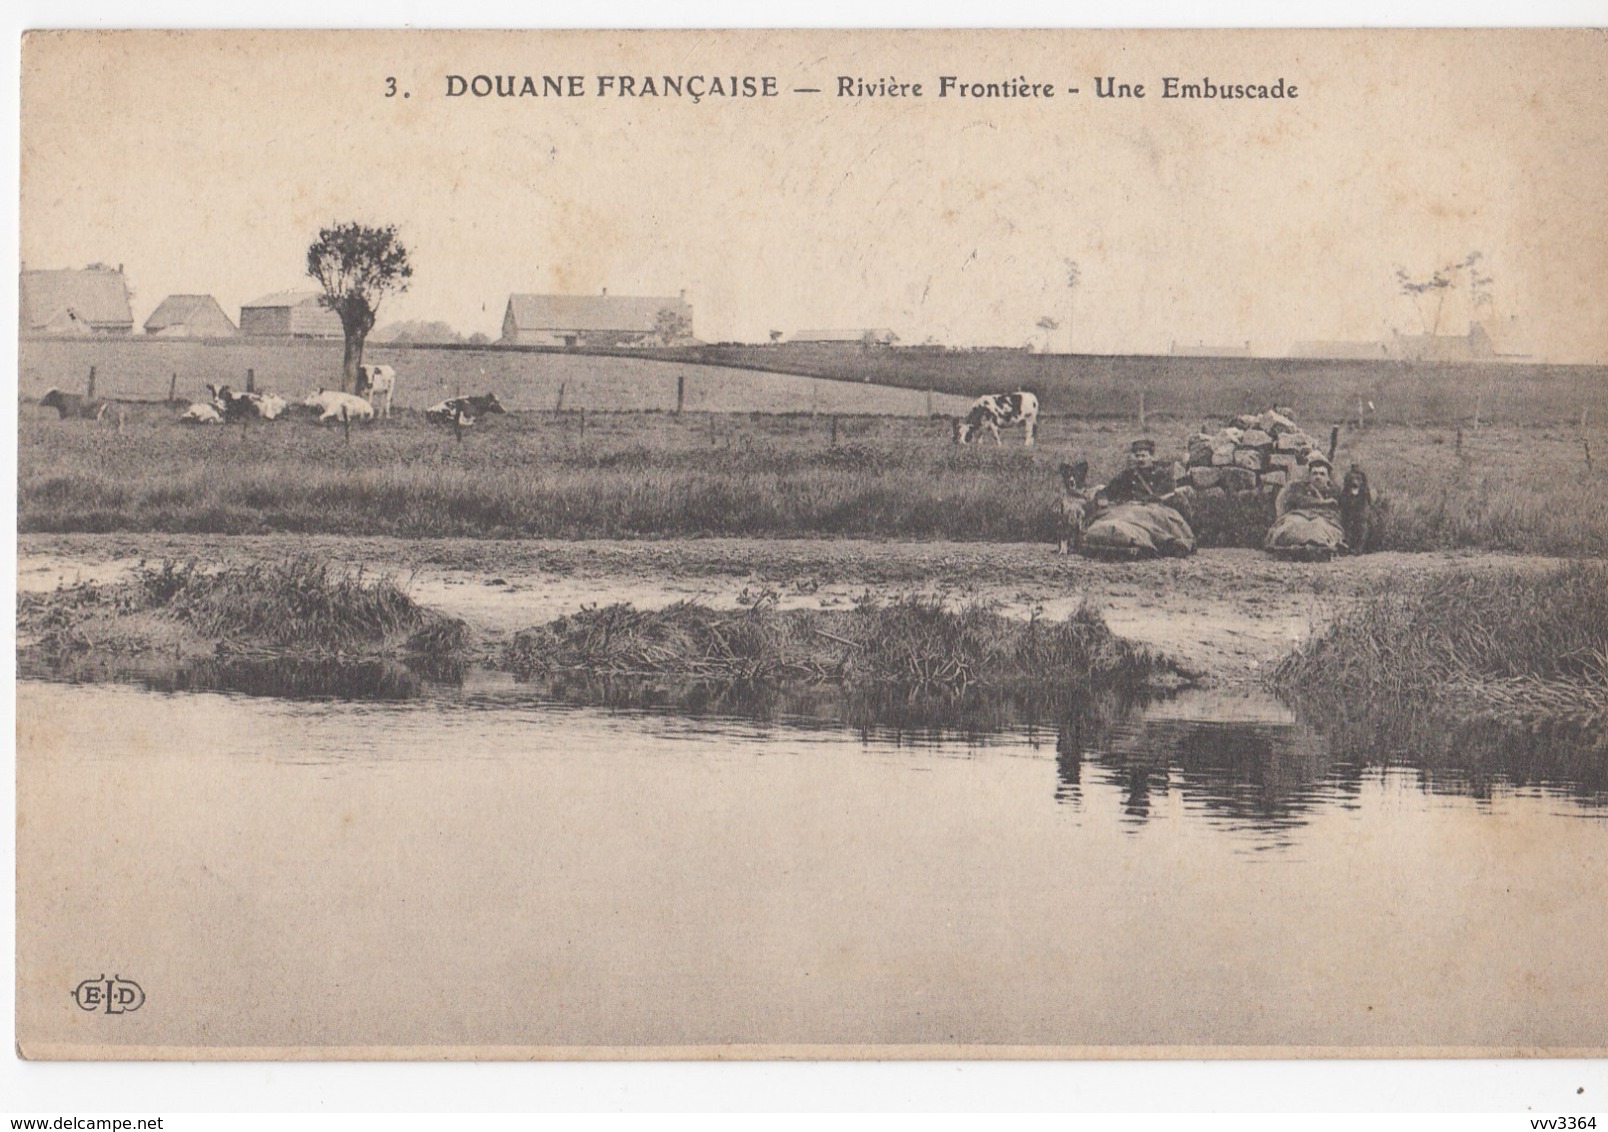 DOUANE FRANCAISE: Rivière Frontière - Une Embuscade - Dogana